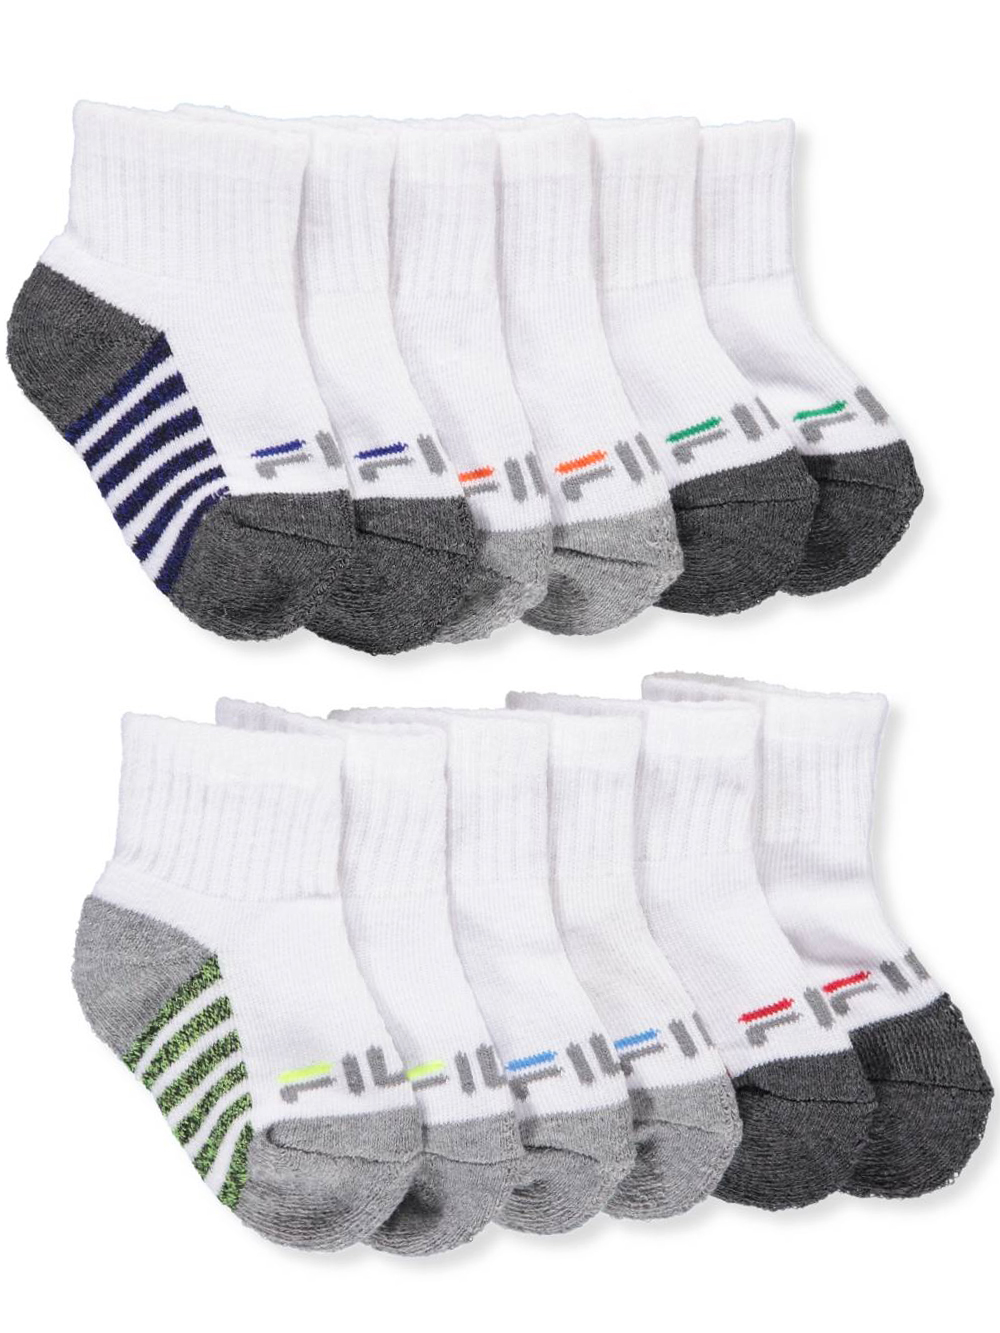 fila baby socks